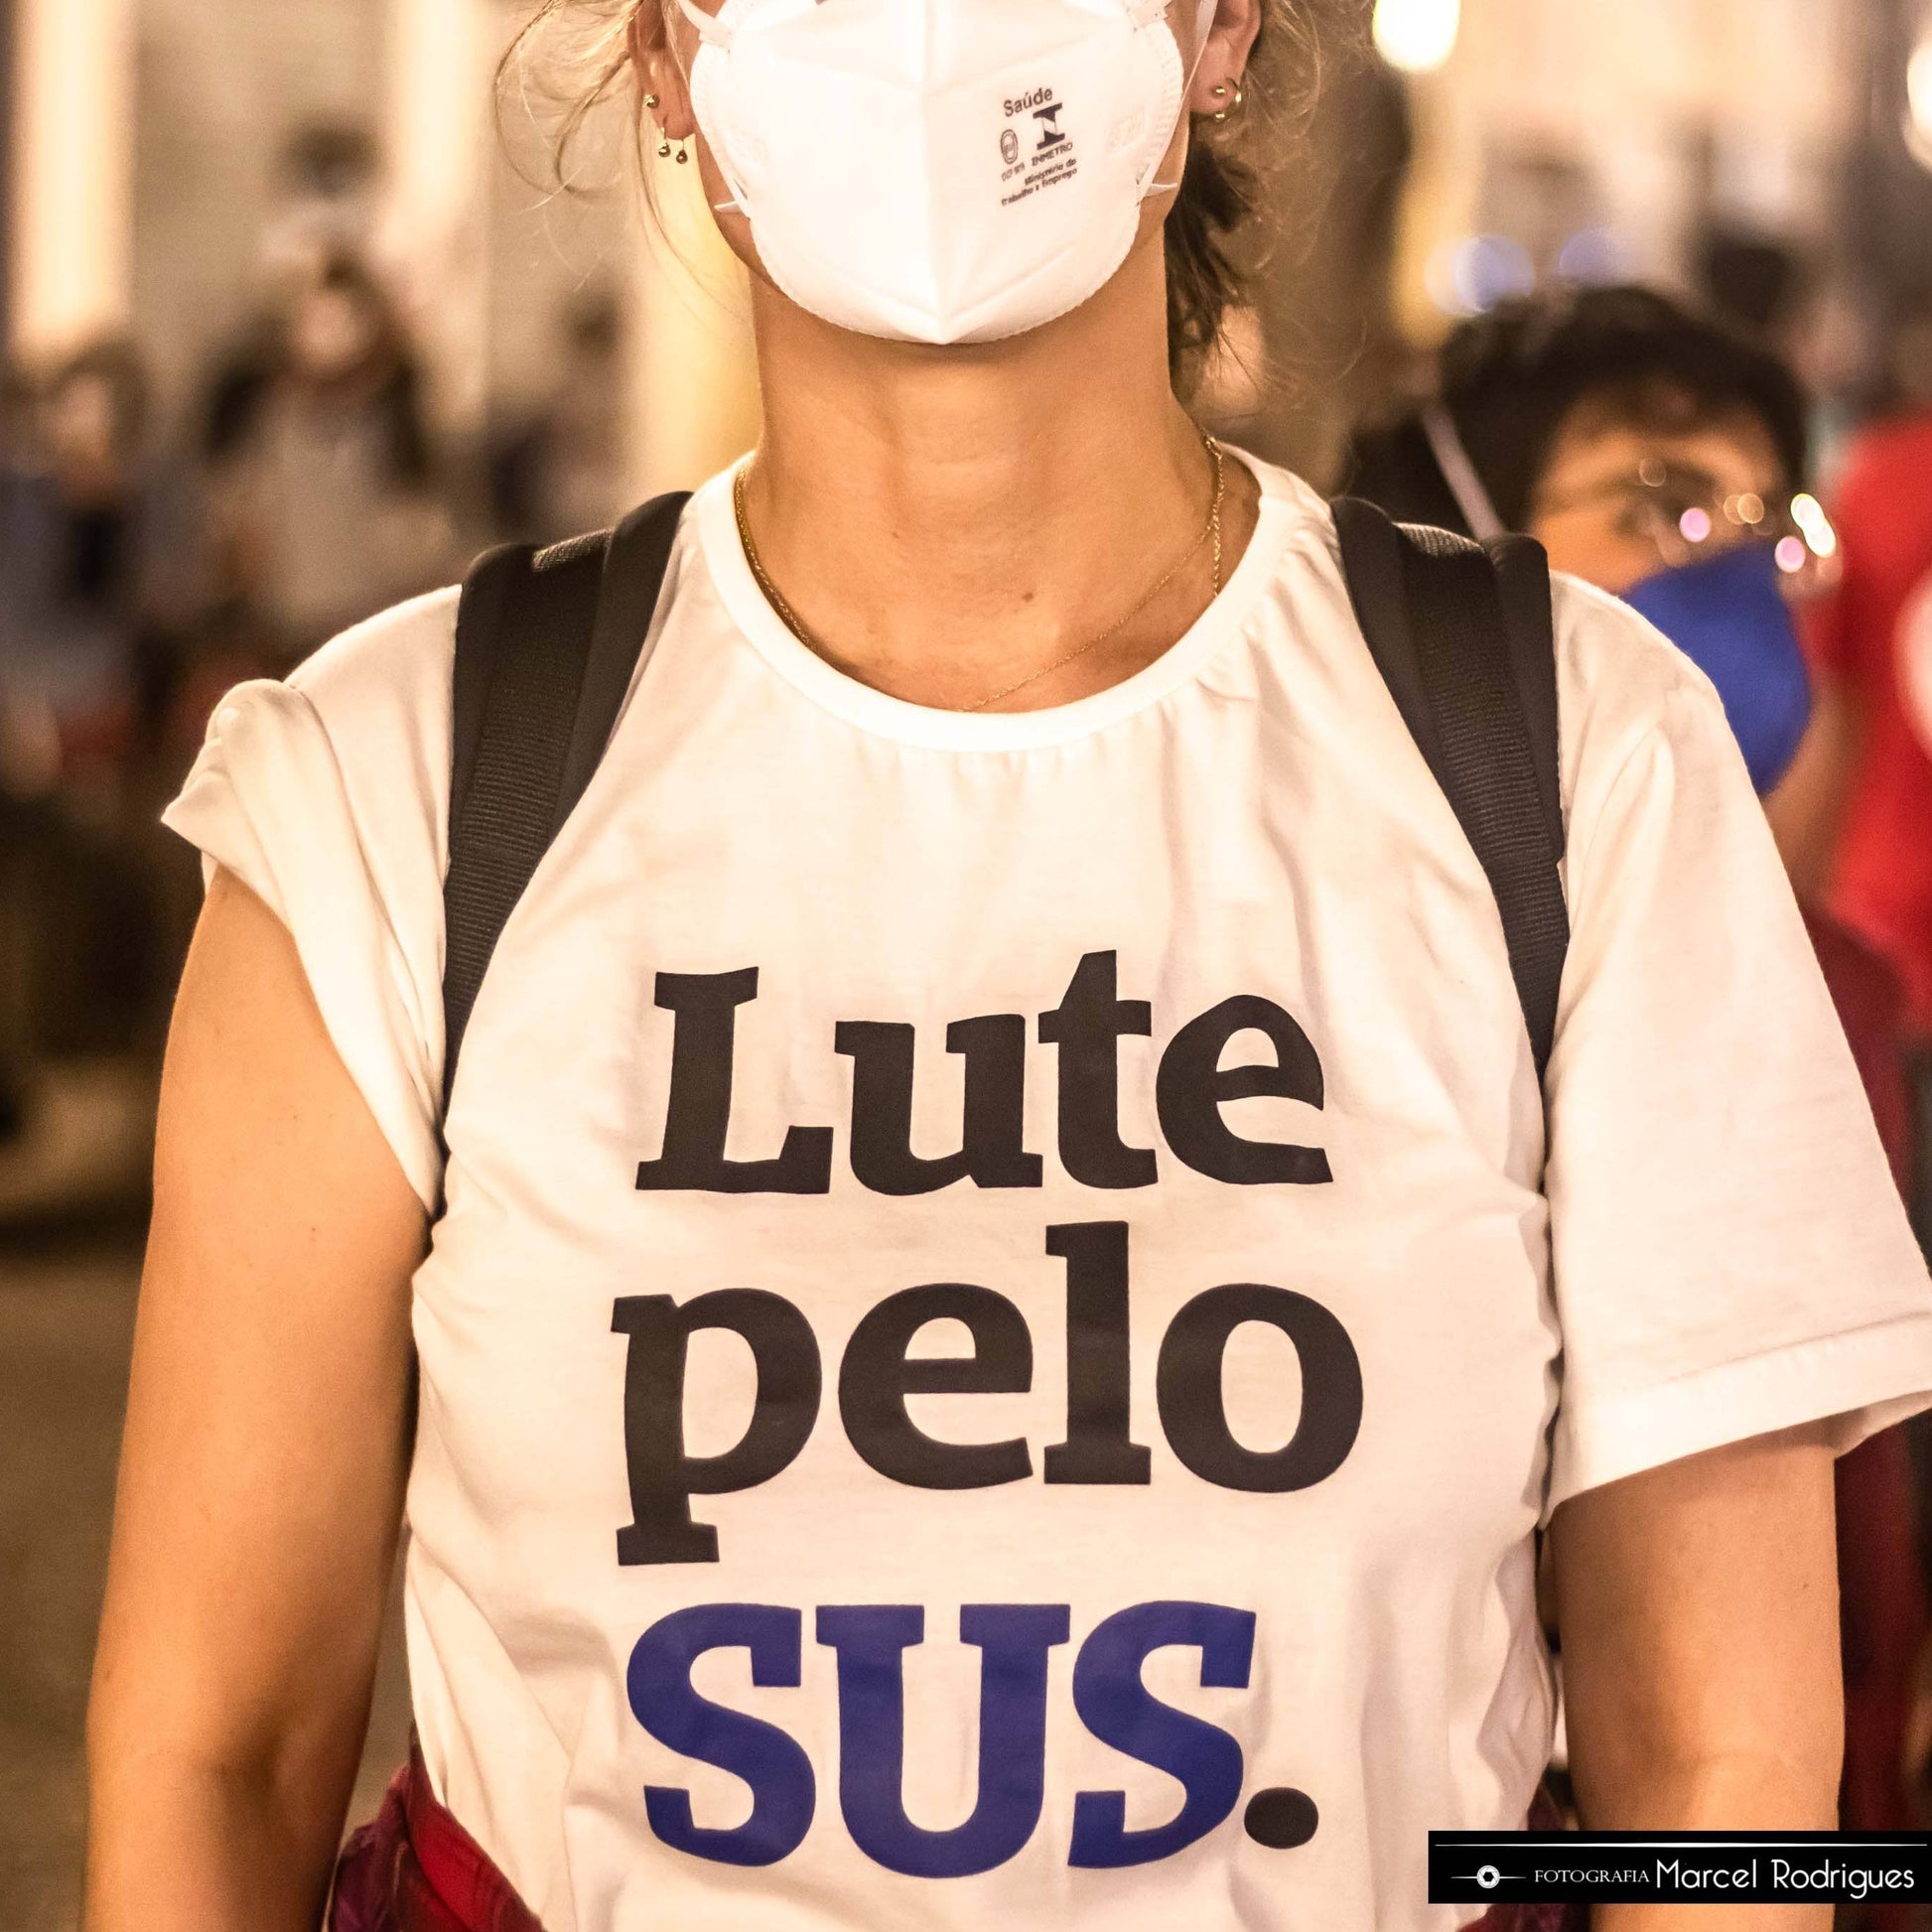 Foto colorida de mulher branca de cabelo liso preso, Veste uma camiseta branca escrito lute pelo sus em preto e azul, com mascara branca e mochila preta nas costas. Fundo desfocado